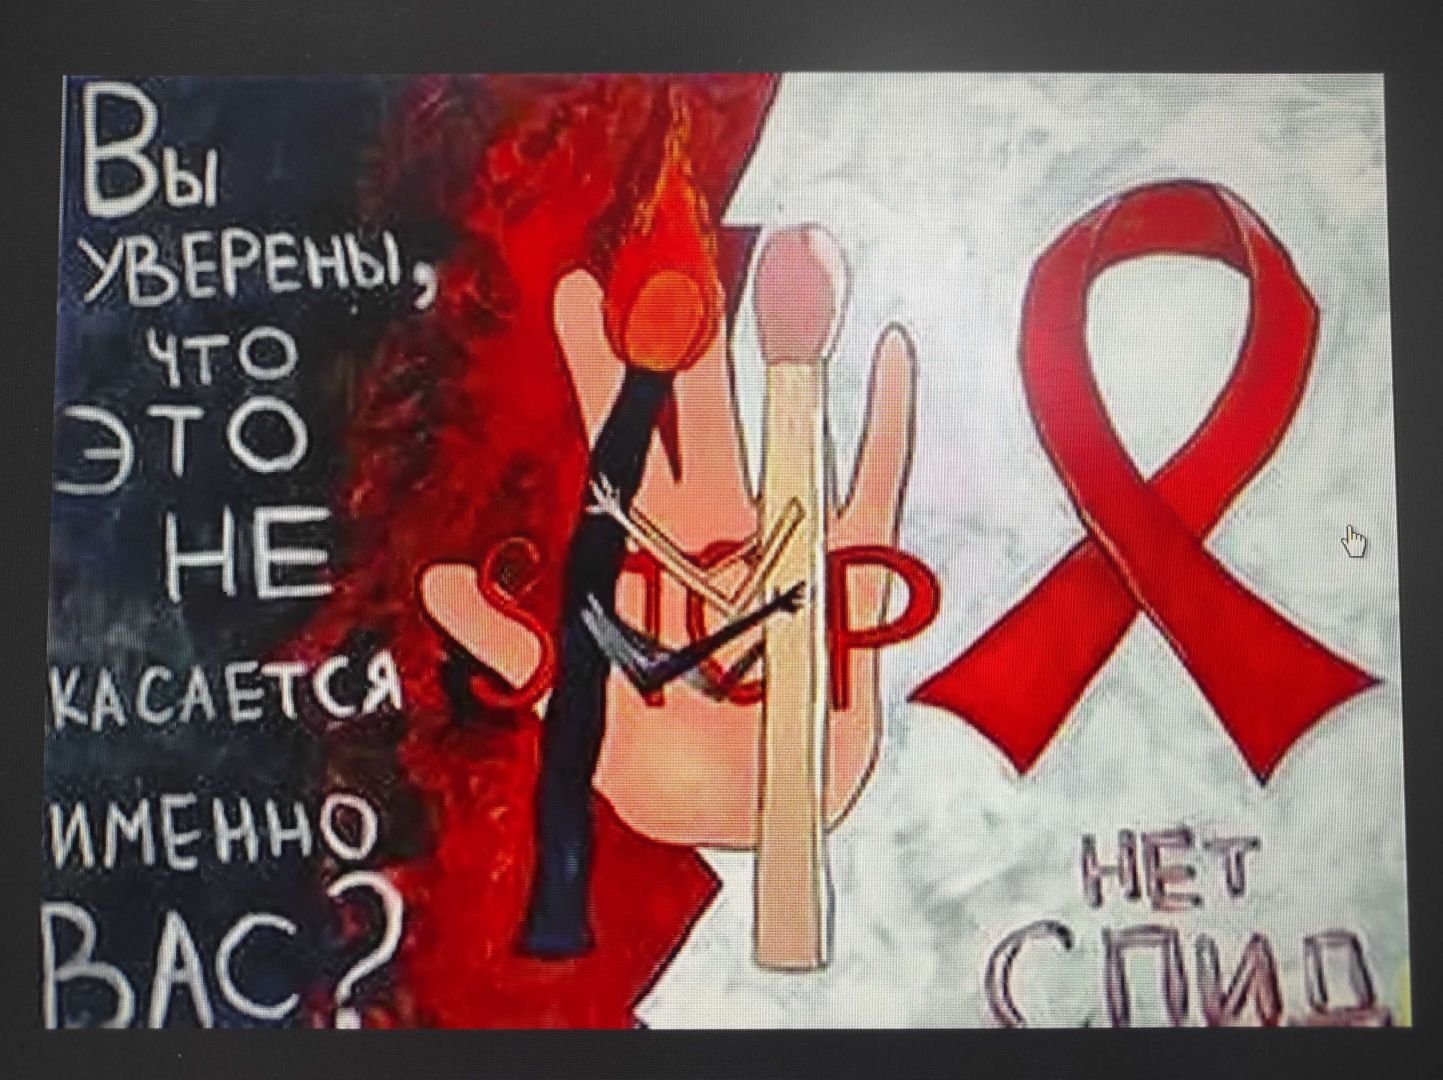 Спасибо господь что я такой спид ап. СПИД плакат. Плакат на тему против СПИДА. Плакат против ВИЧ. Плакат на тему ВИЧ И СПИД.